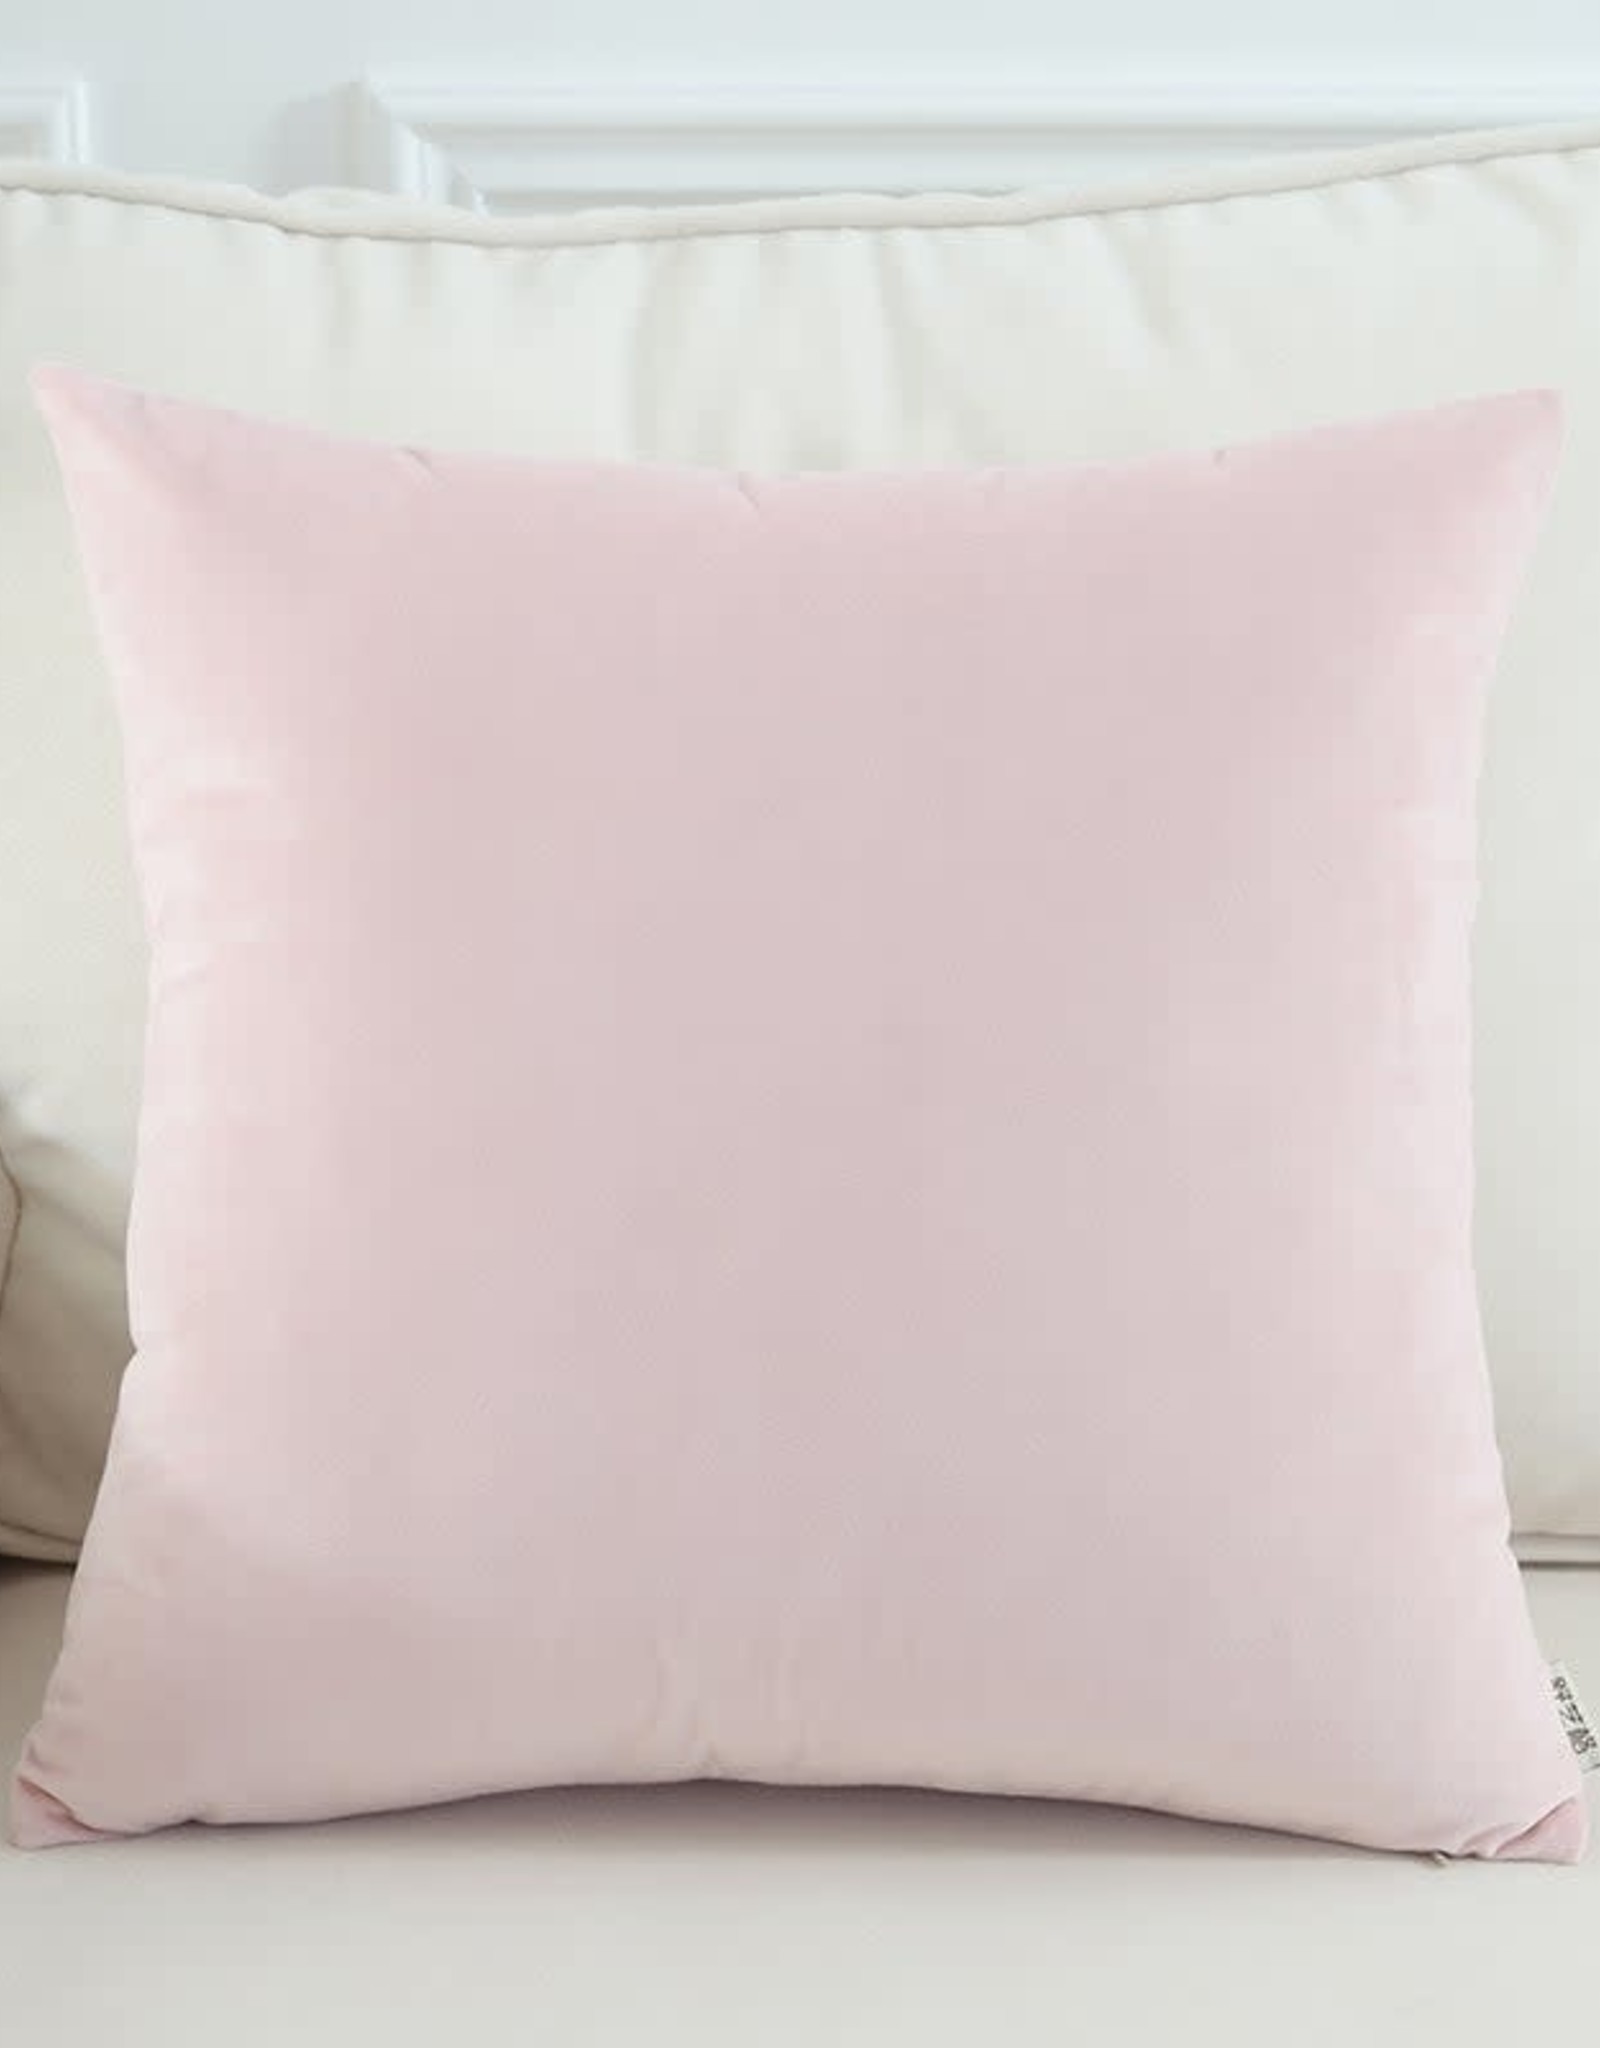 Still & Silent Pillow  - Pale Pink